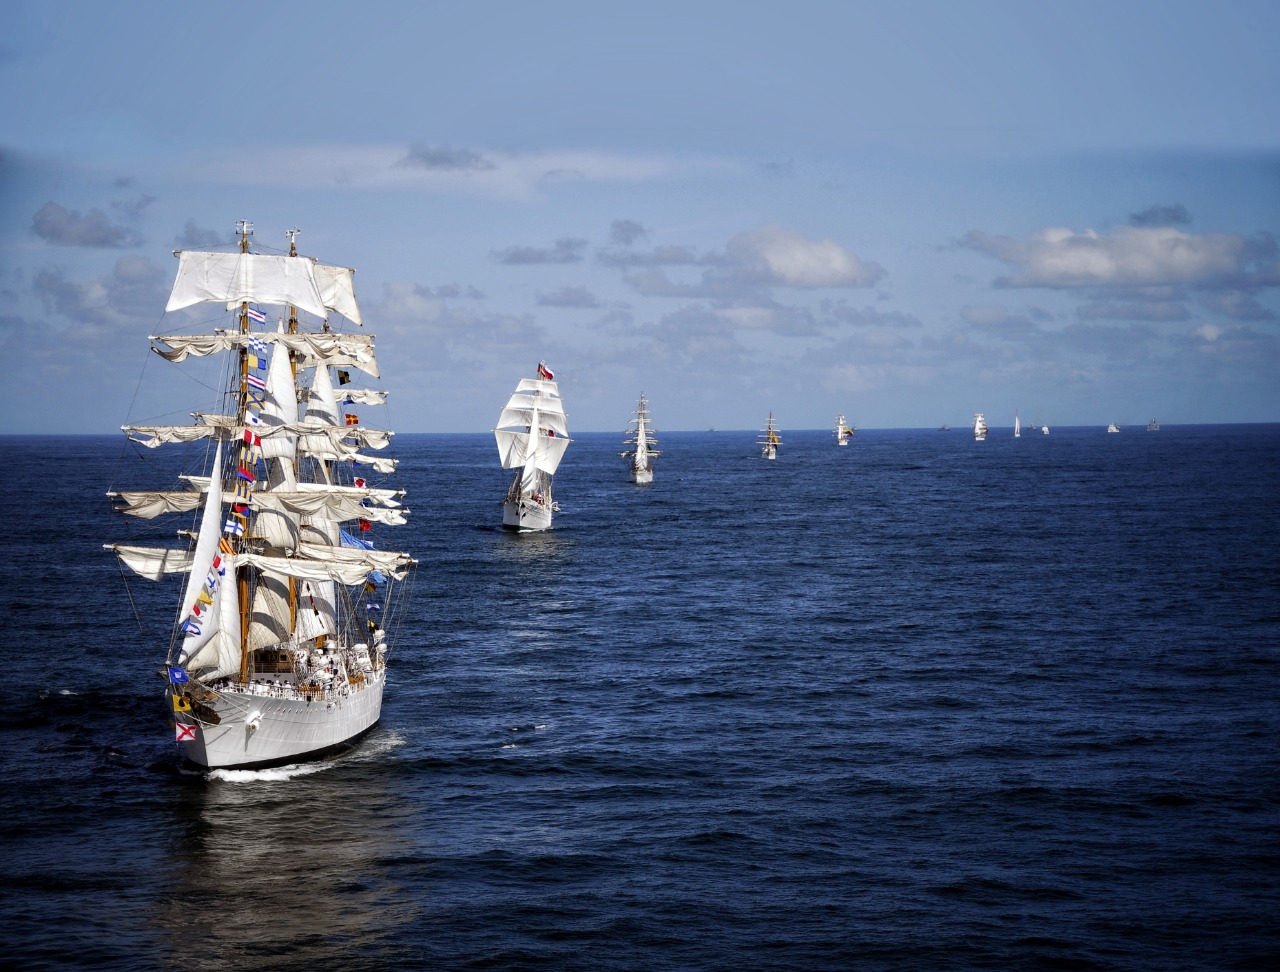 La fragata “Libertad” y una decena de grandes veleros desfilan frente a Mar del Plata